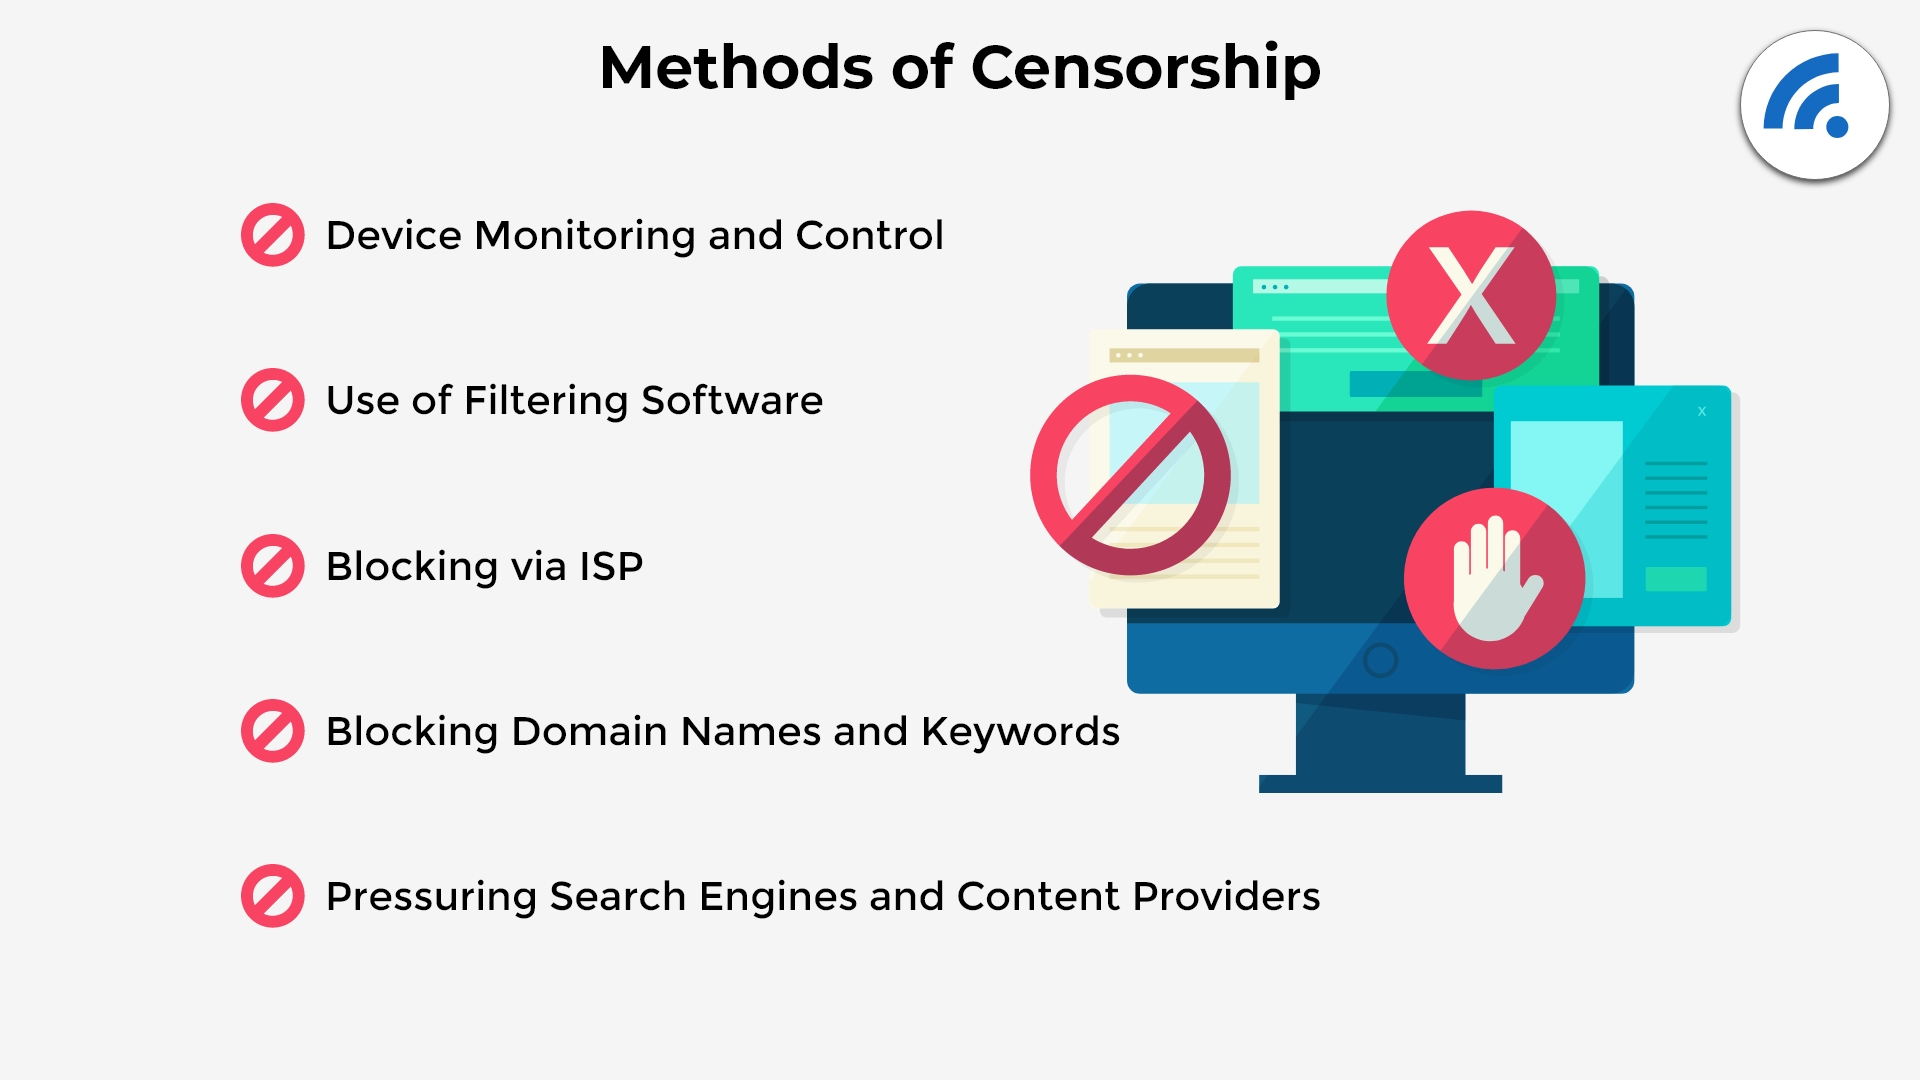 Common methods of censorship